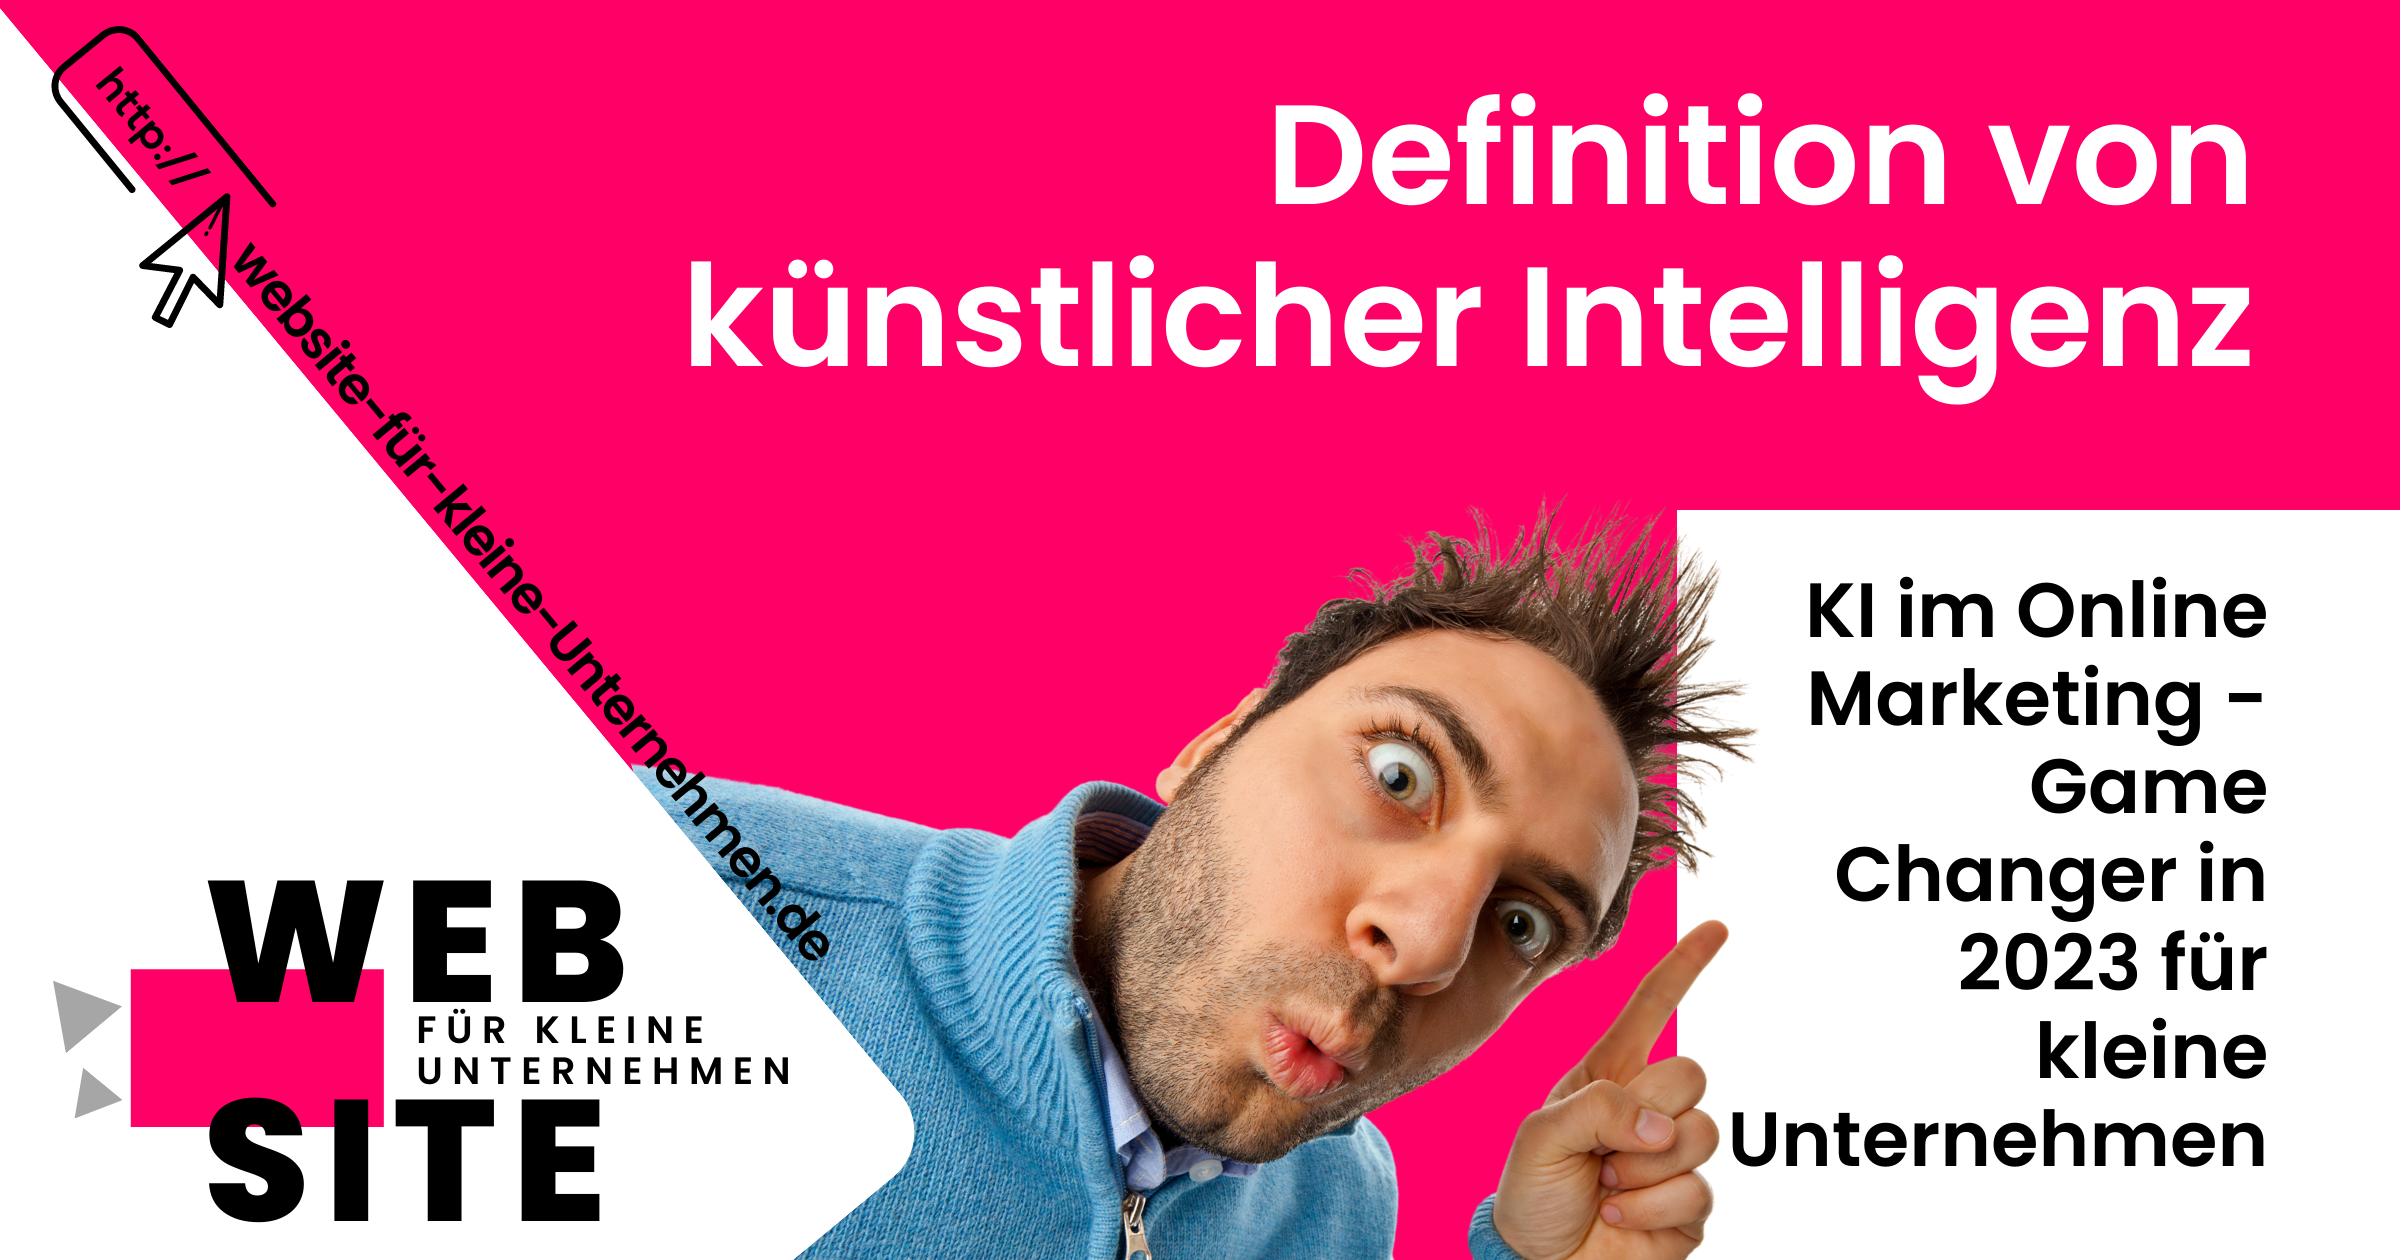 KI - künstliche Intelligenz im Marketing für Unternehmen - Die Definition von KI künstlicher Intelligenz